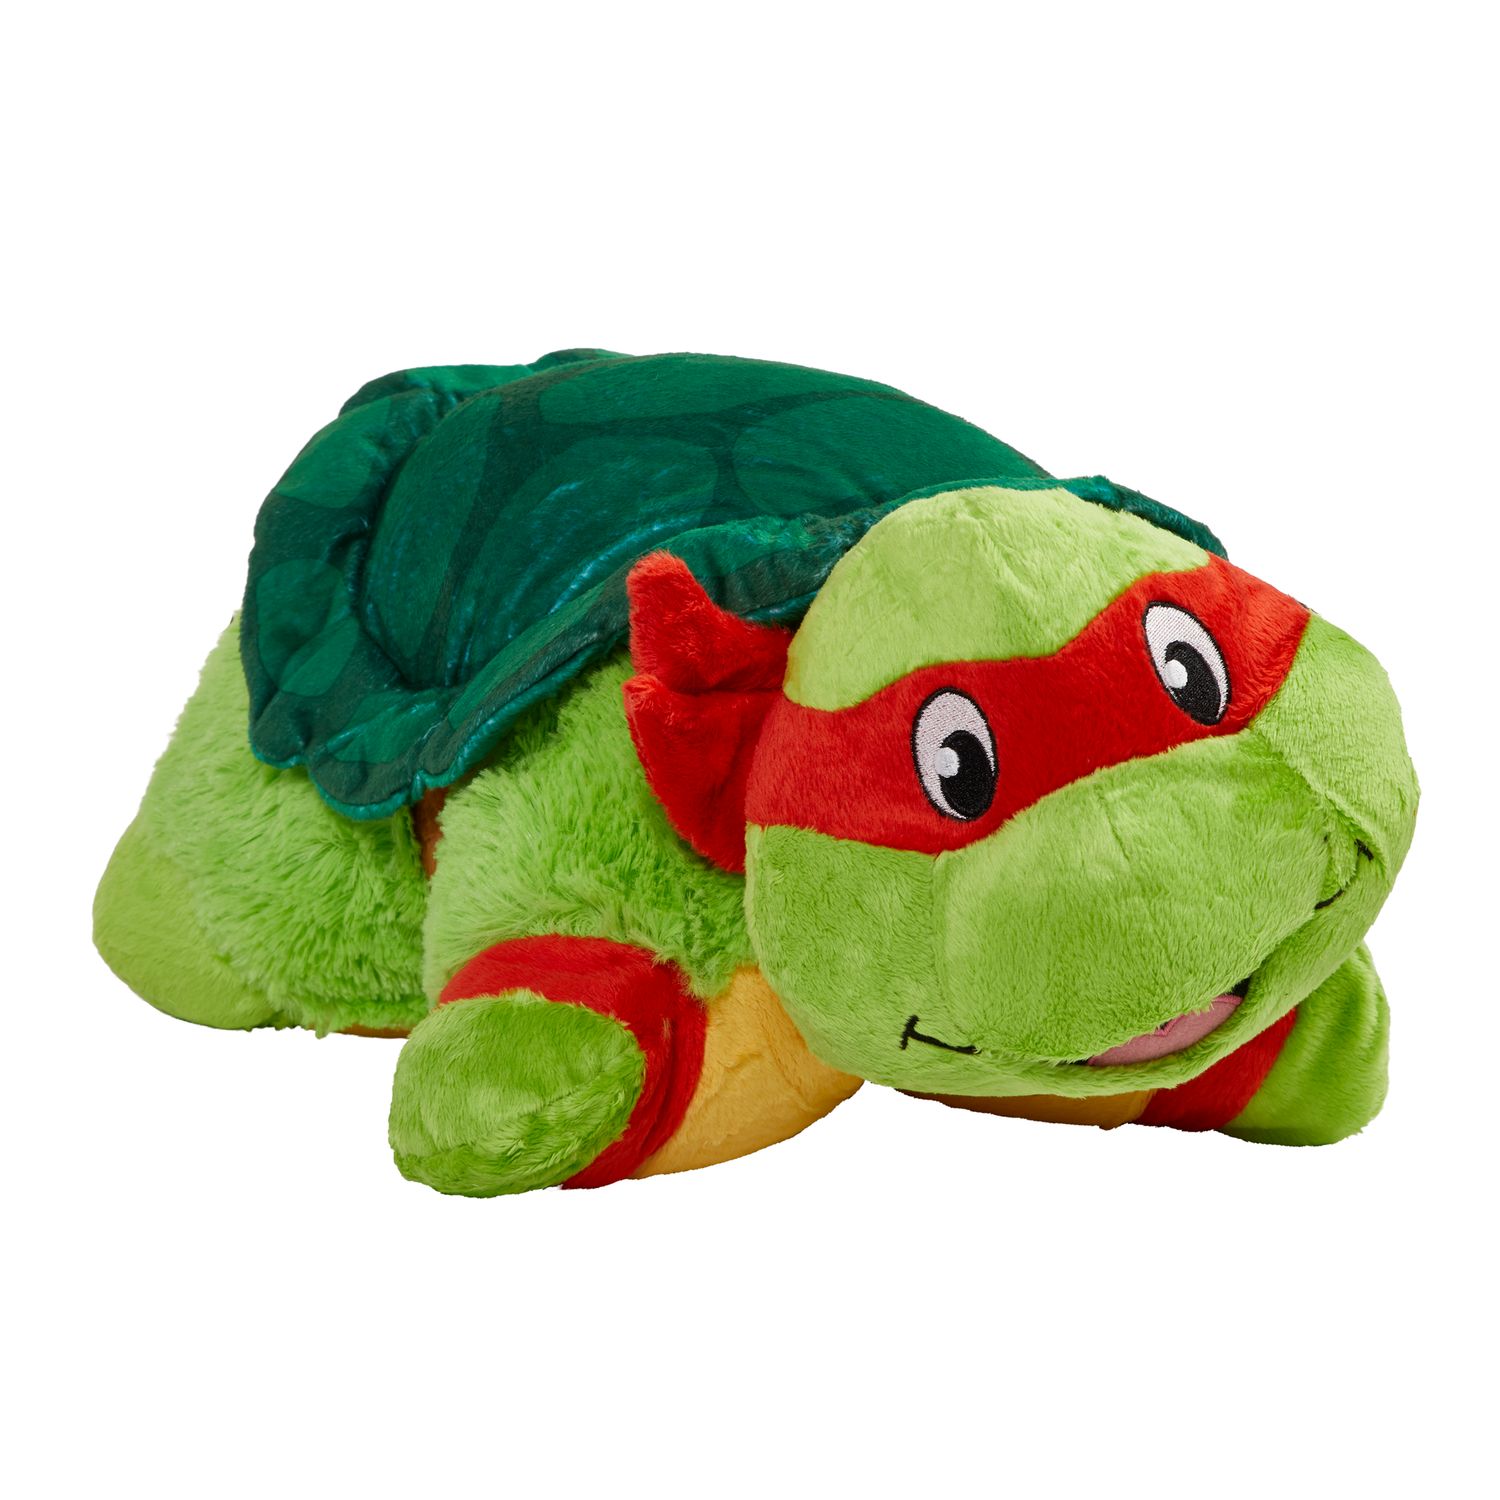 giant ninja turtle stuffed animal